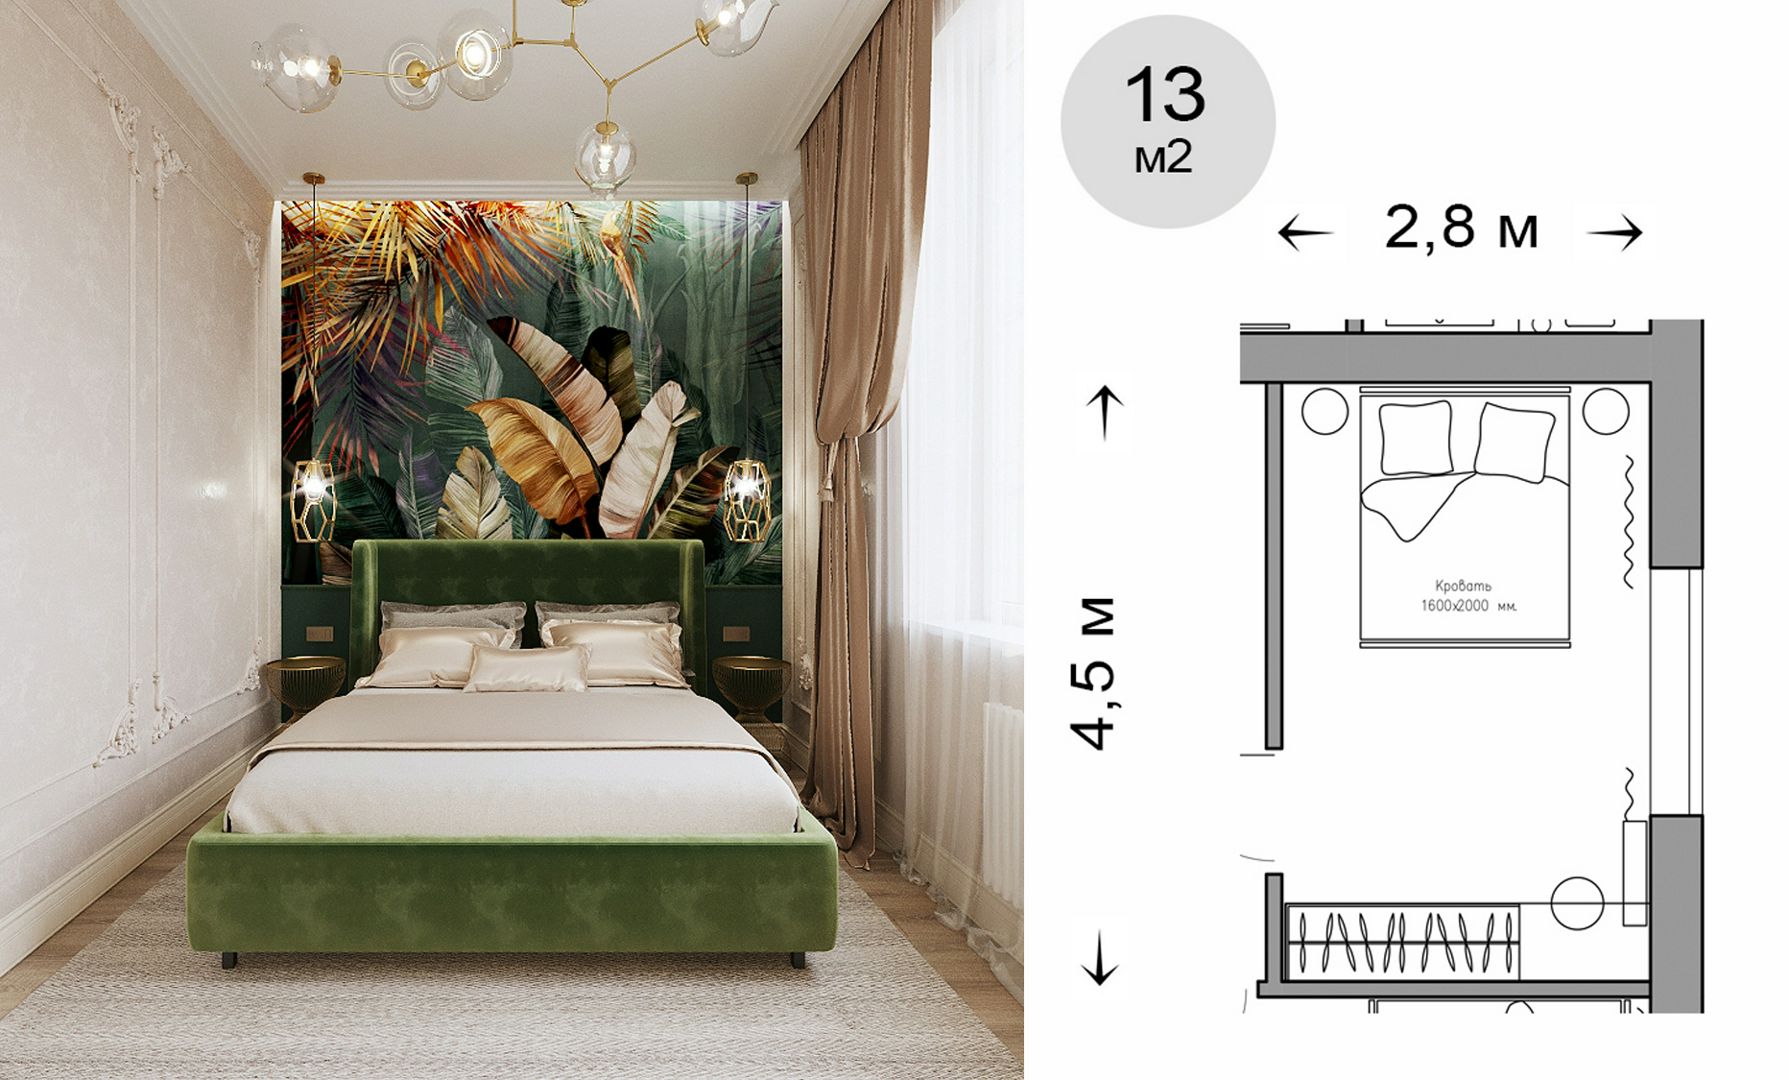 Готовая сцена 3D модель дизайн интерьера спальни квартиры дома. 3D max / Corona Render